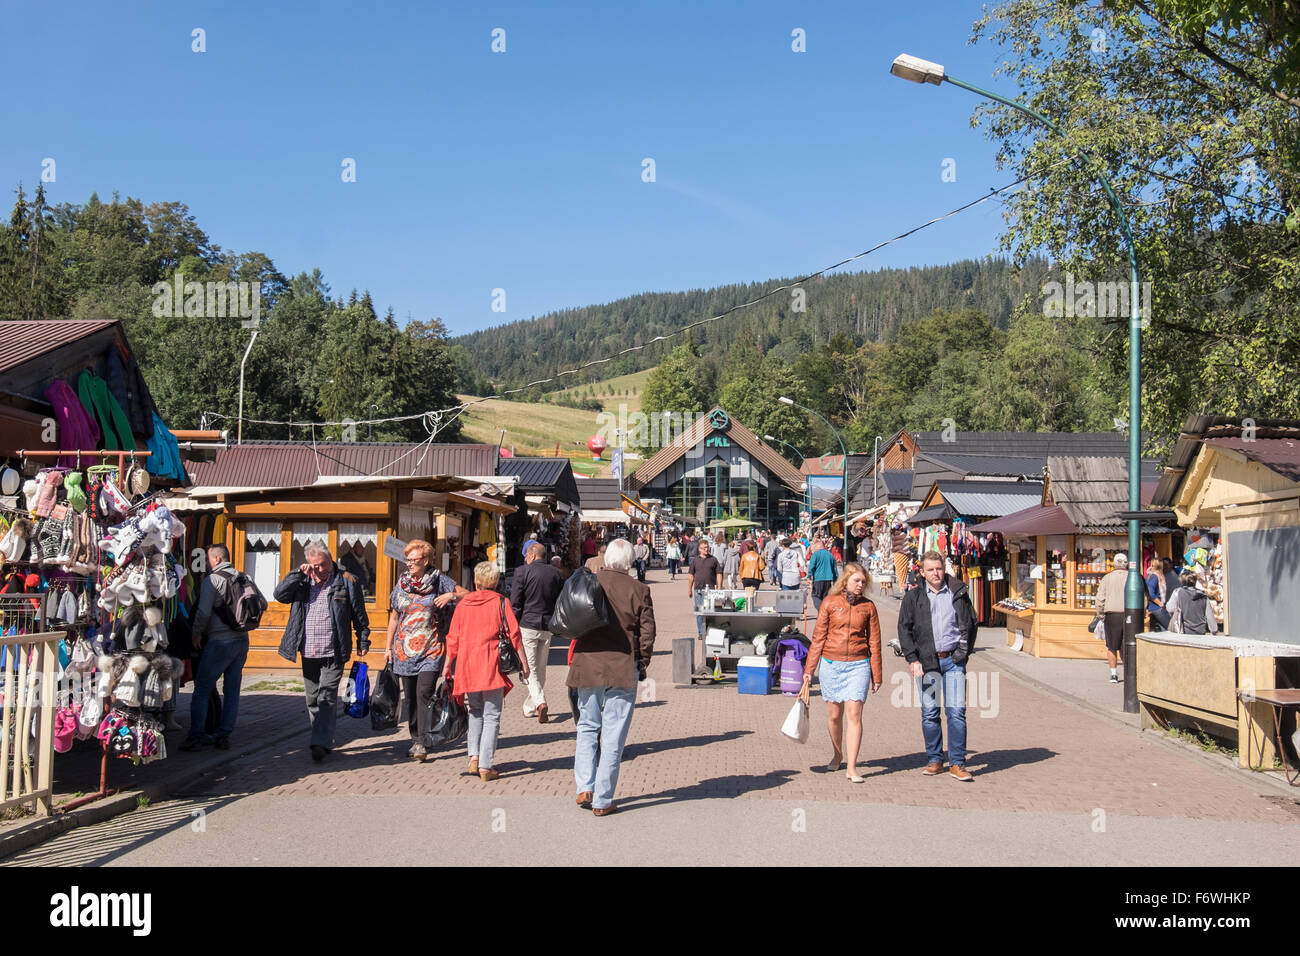 La foule des acheteurs par les étals de marché sur la rue Krupowki, Zakopane, comté de Tatra, Pologne, Europe Banque D'Images